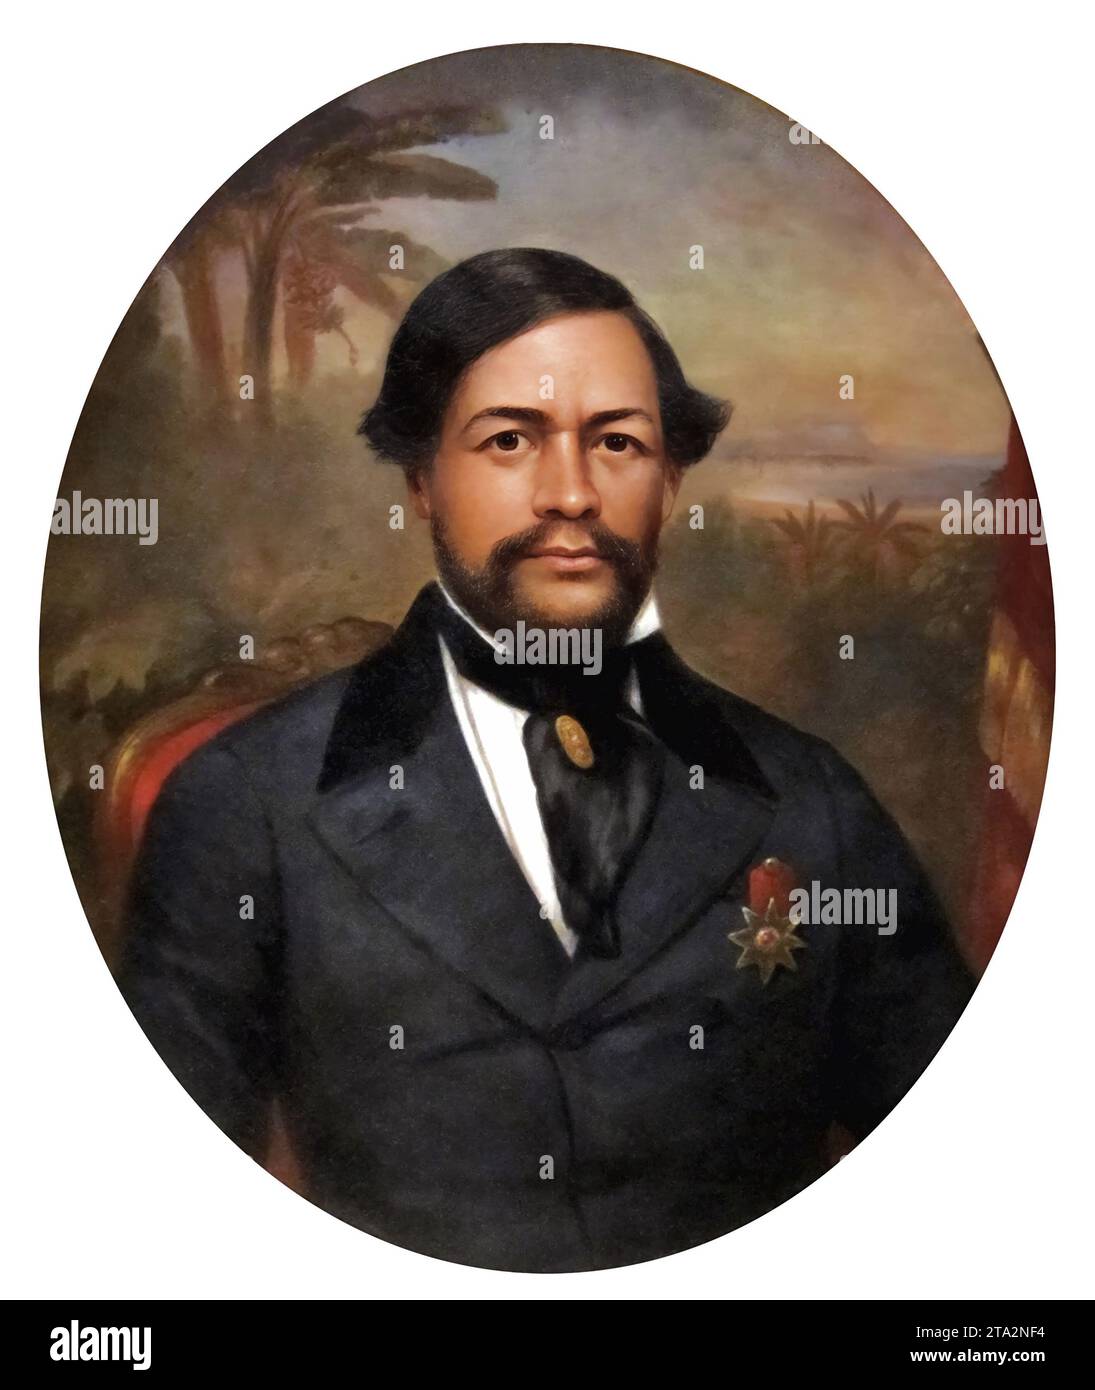 Le roi Kamehameha III Portrait du troisième souverain du royaume d'Hawaï, Keawewweawe'ula Kīwalaʻō Kauikeaouli Kaleiopapa Kalani Waiakua Kalanikau Iokikilo Kīwalaʻō i ke kapu Kamehameha (1814-1854) Banque D'Images